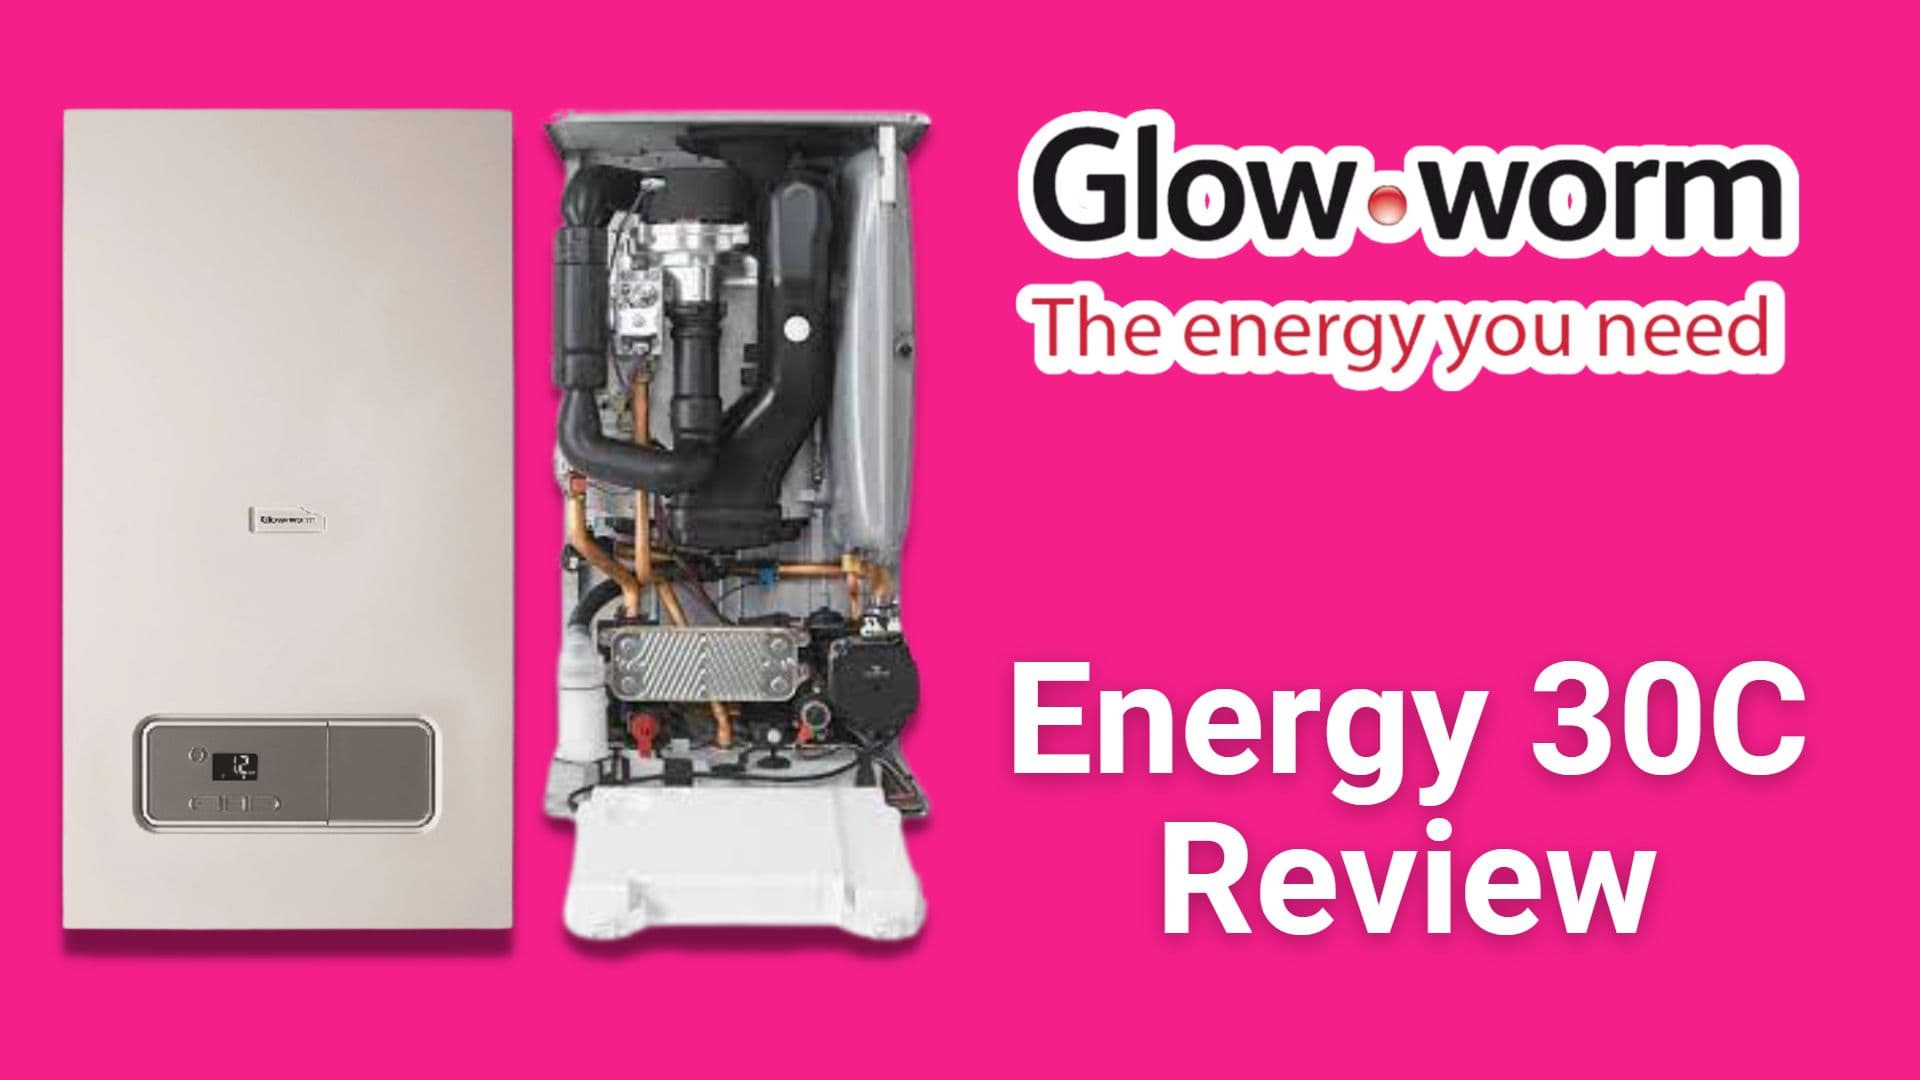 Glow-worm Energy 30c boiler